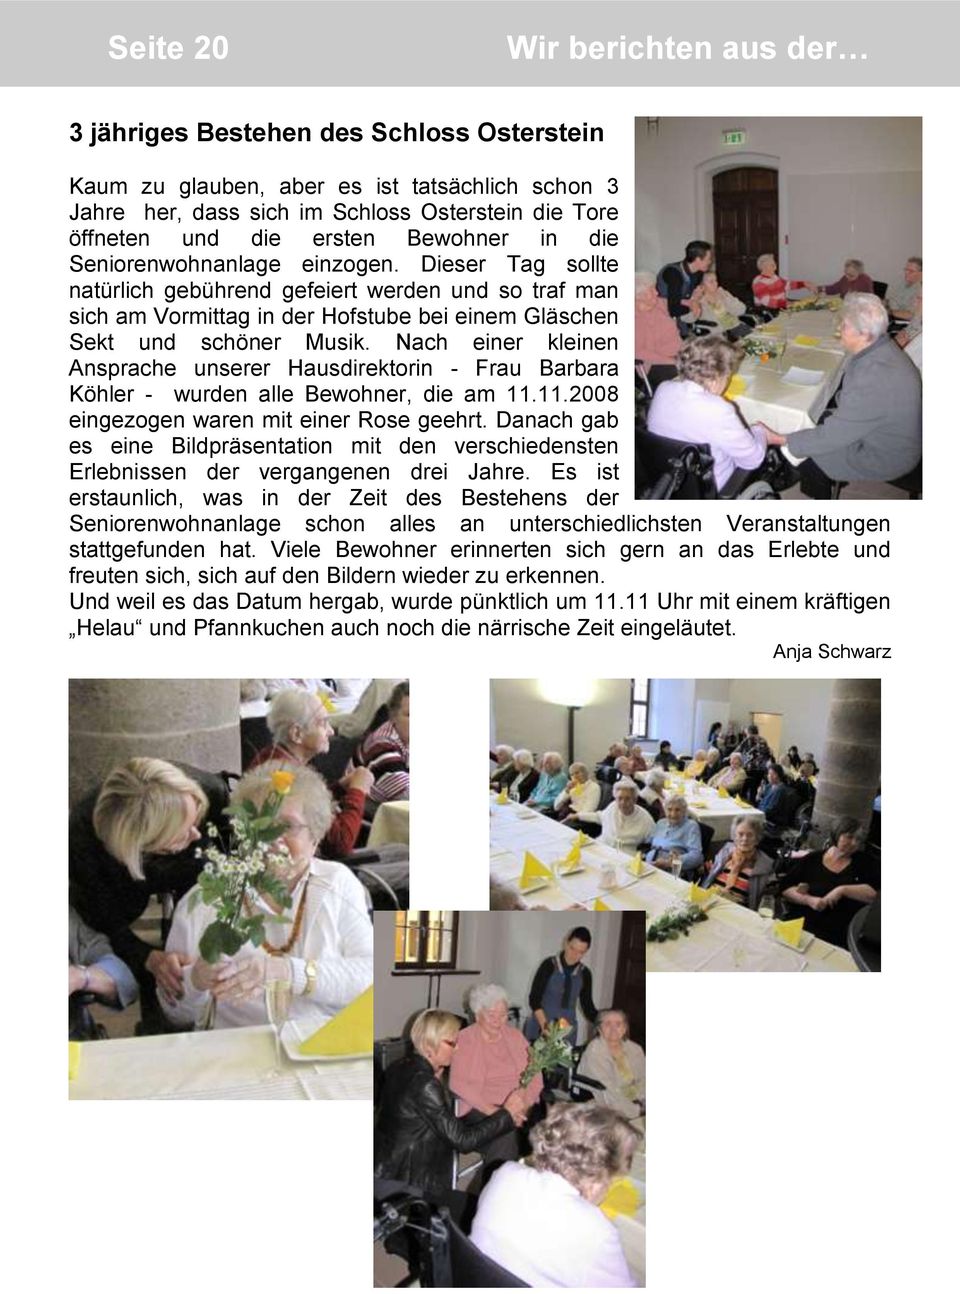 Nach einer kleinen Ansprache unserer Hausdirektorin - Frau Barbara Köhler - wurden alle Bewohner, die am 11.11.2008 eingezogen waren mit einer Rose geehrt.